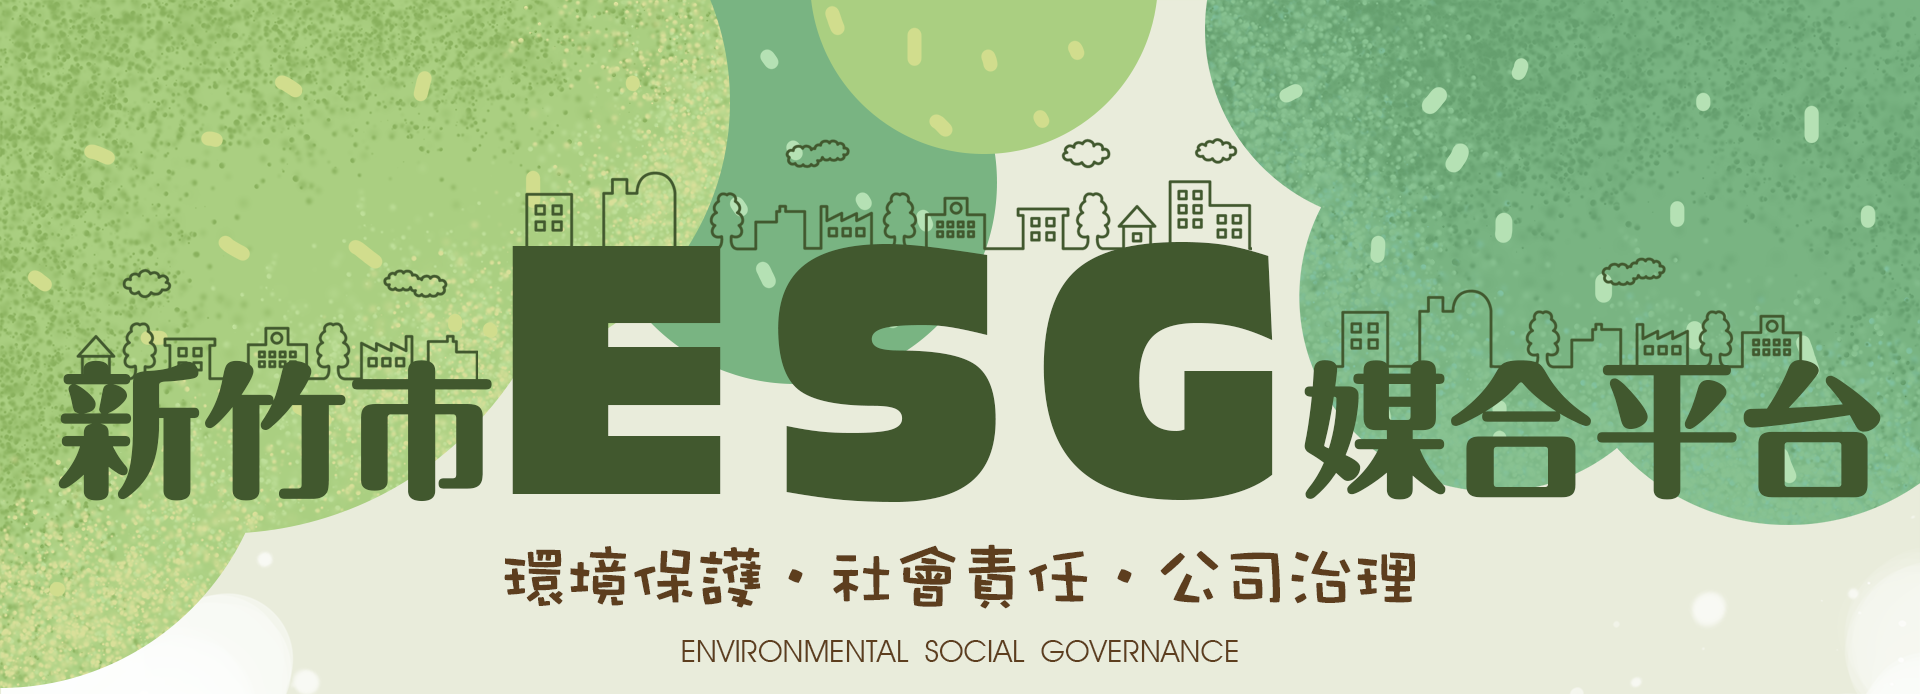 新竹市環保局ESG合作議題首頁宣傳圖